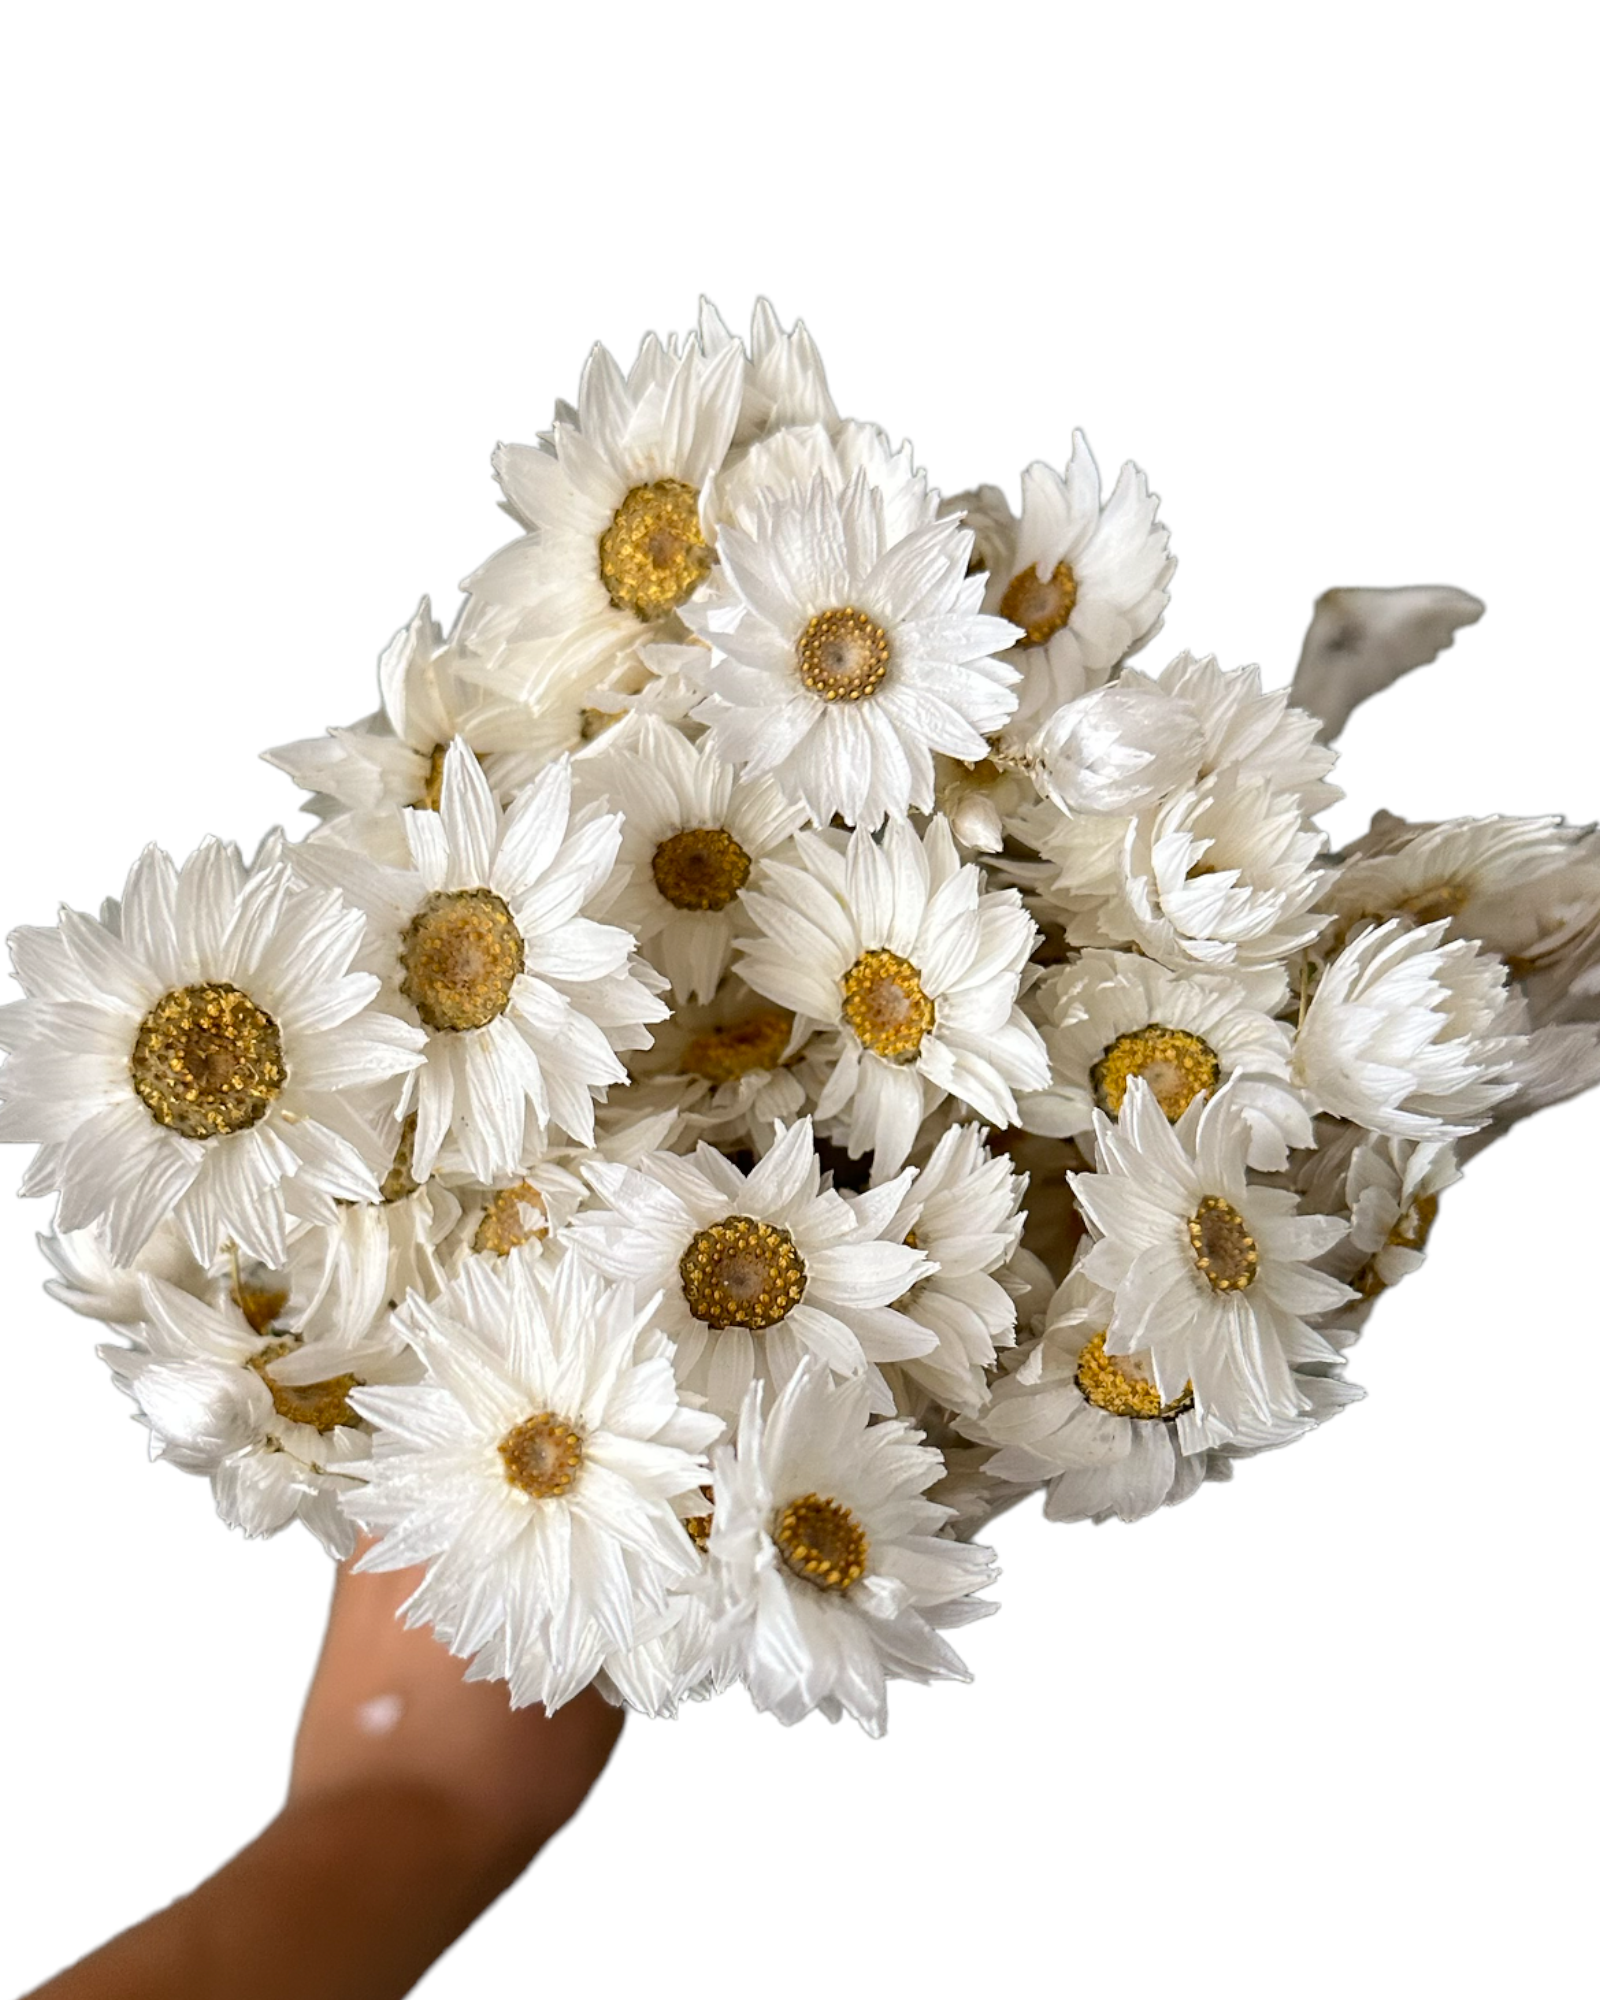 Daisies/Daisy - Rhodanthe